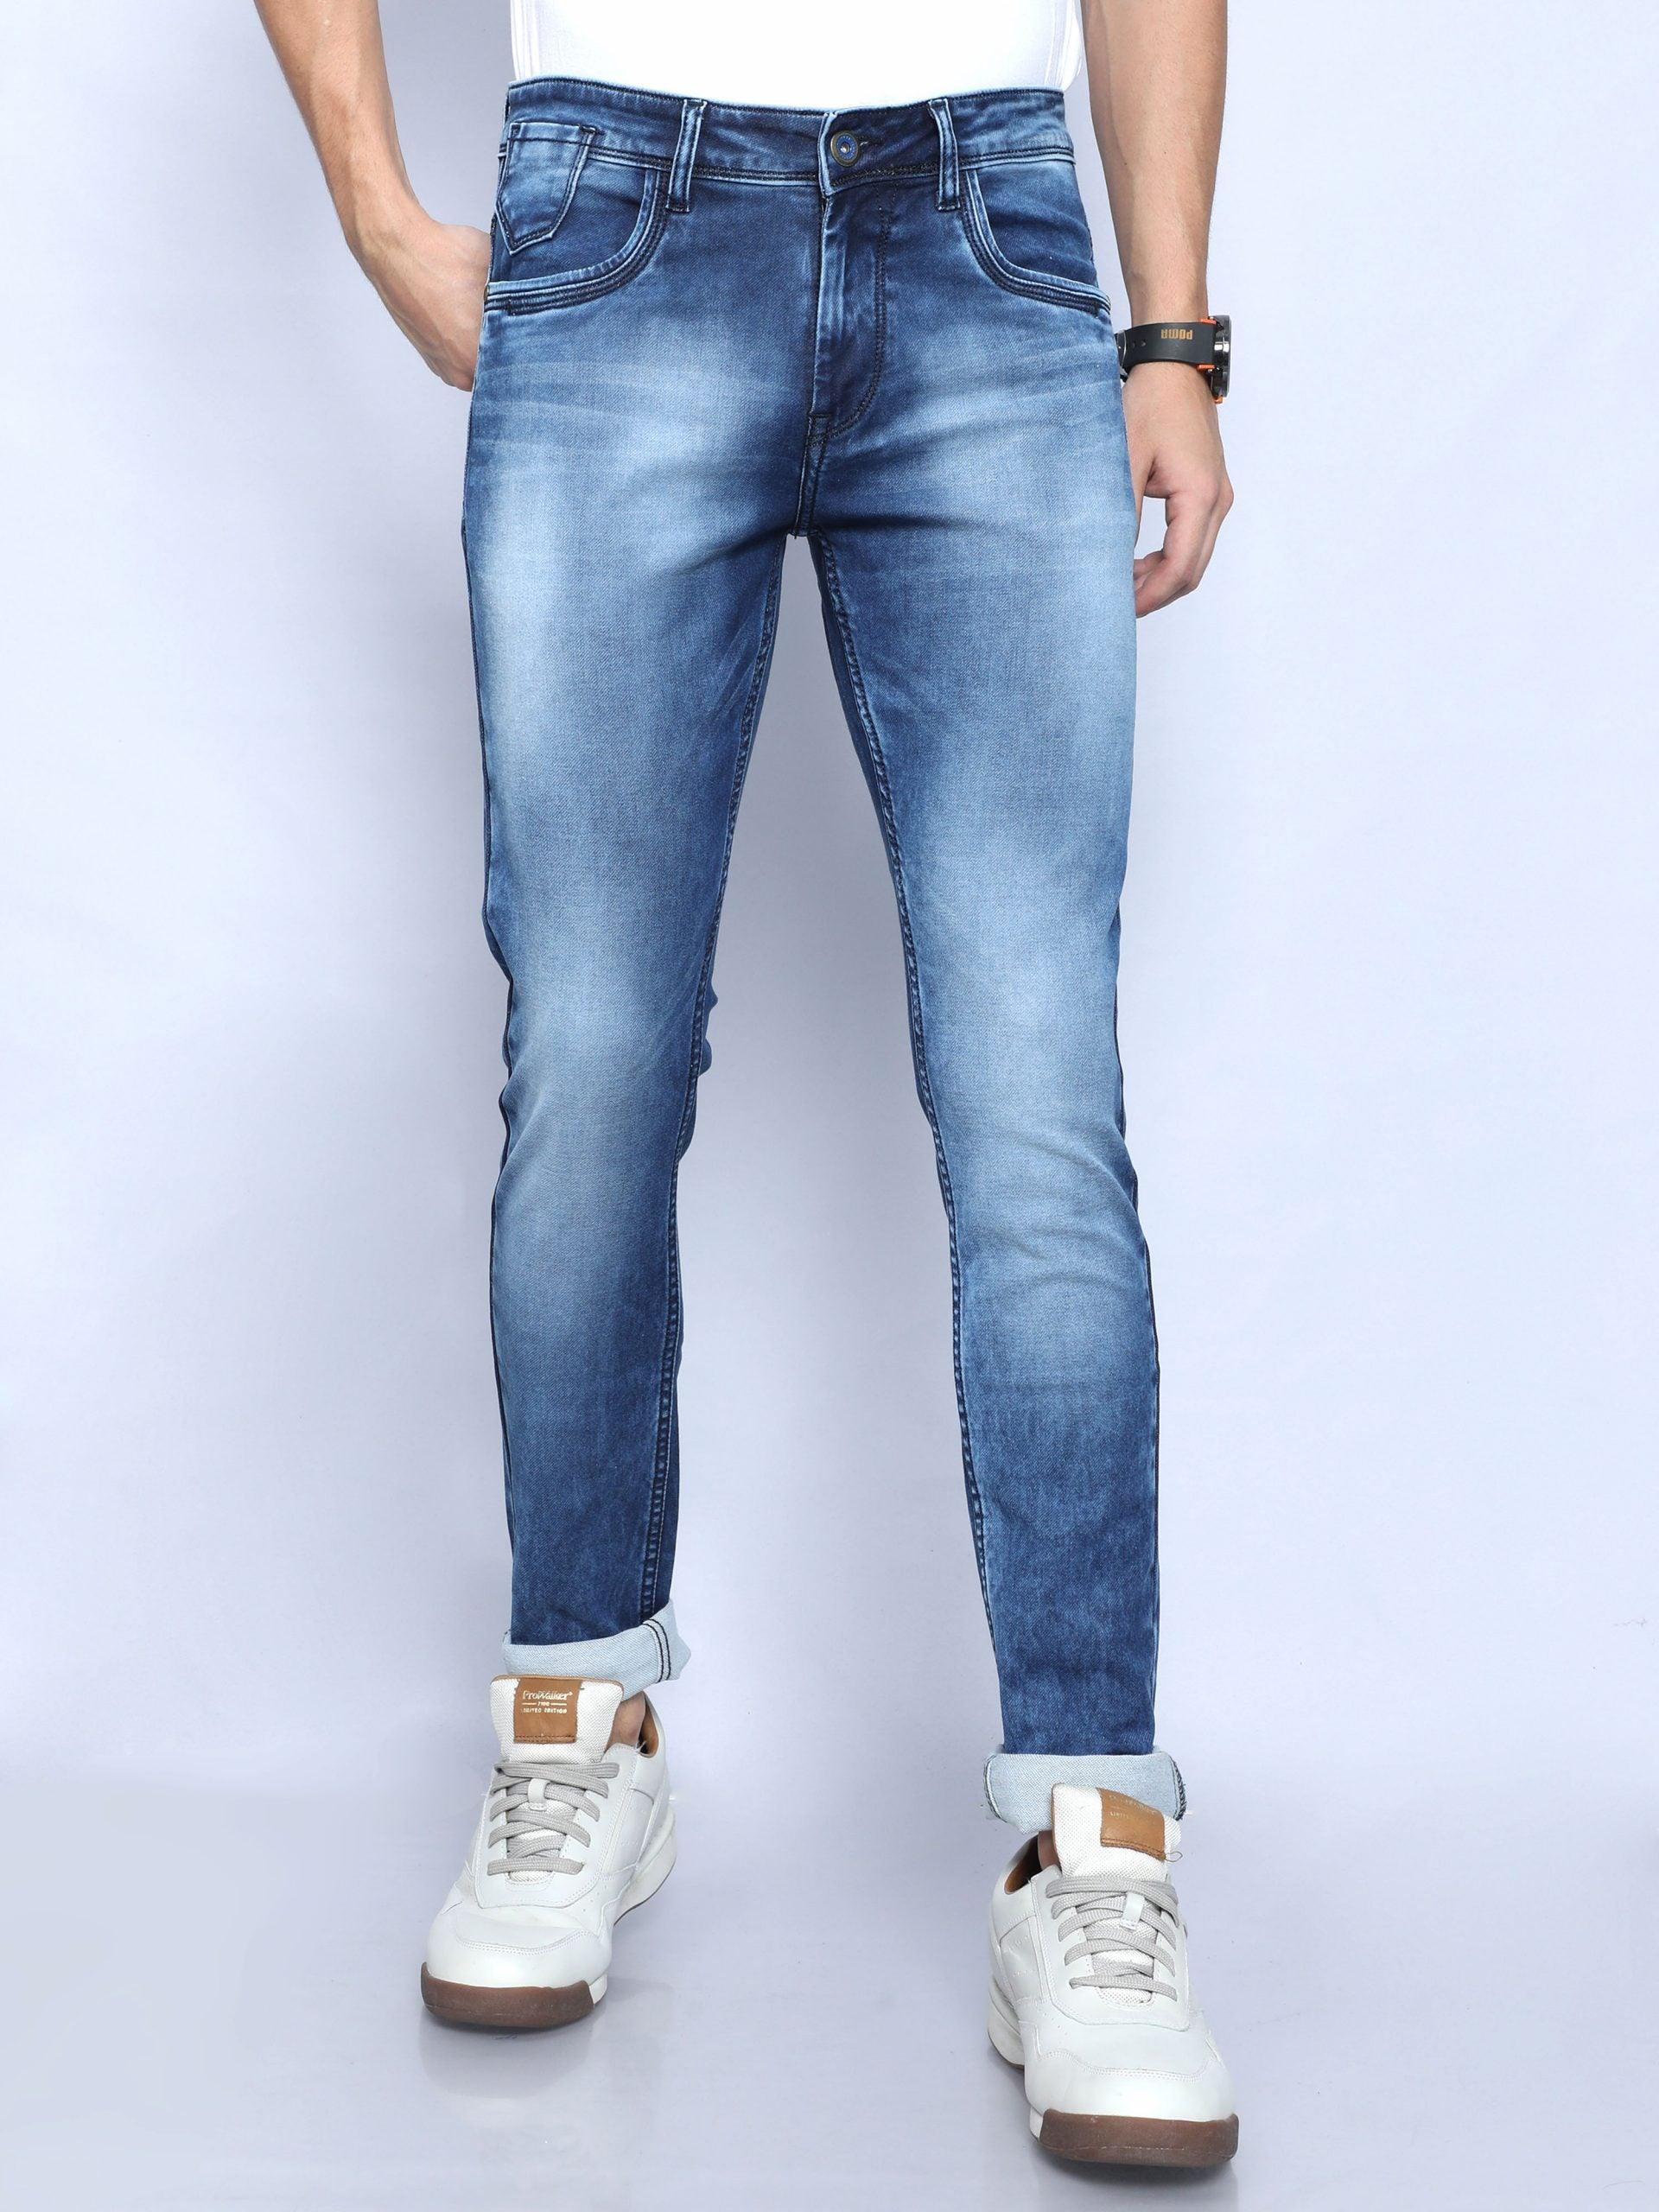 Men's Skinny Fit Jeans - Blue - Triggerjeans